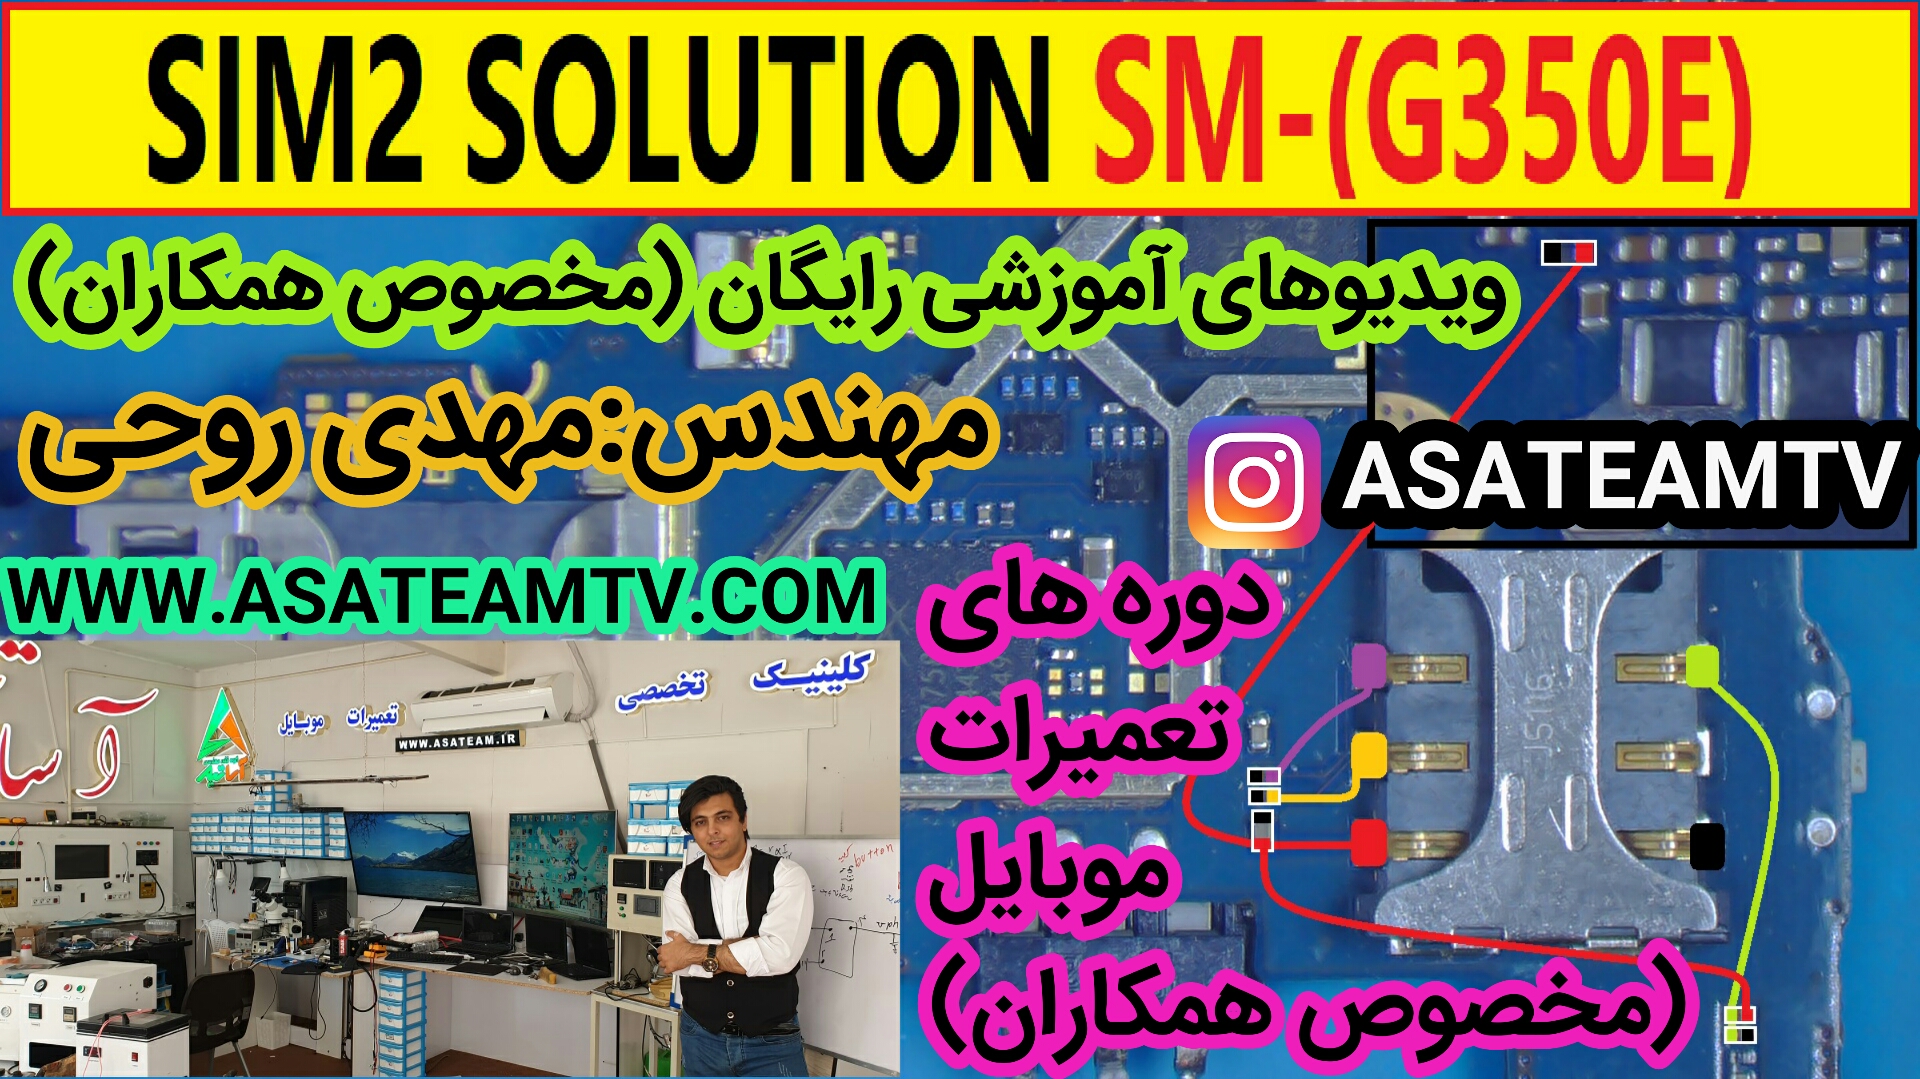 SIM2 SOLUTION G350E